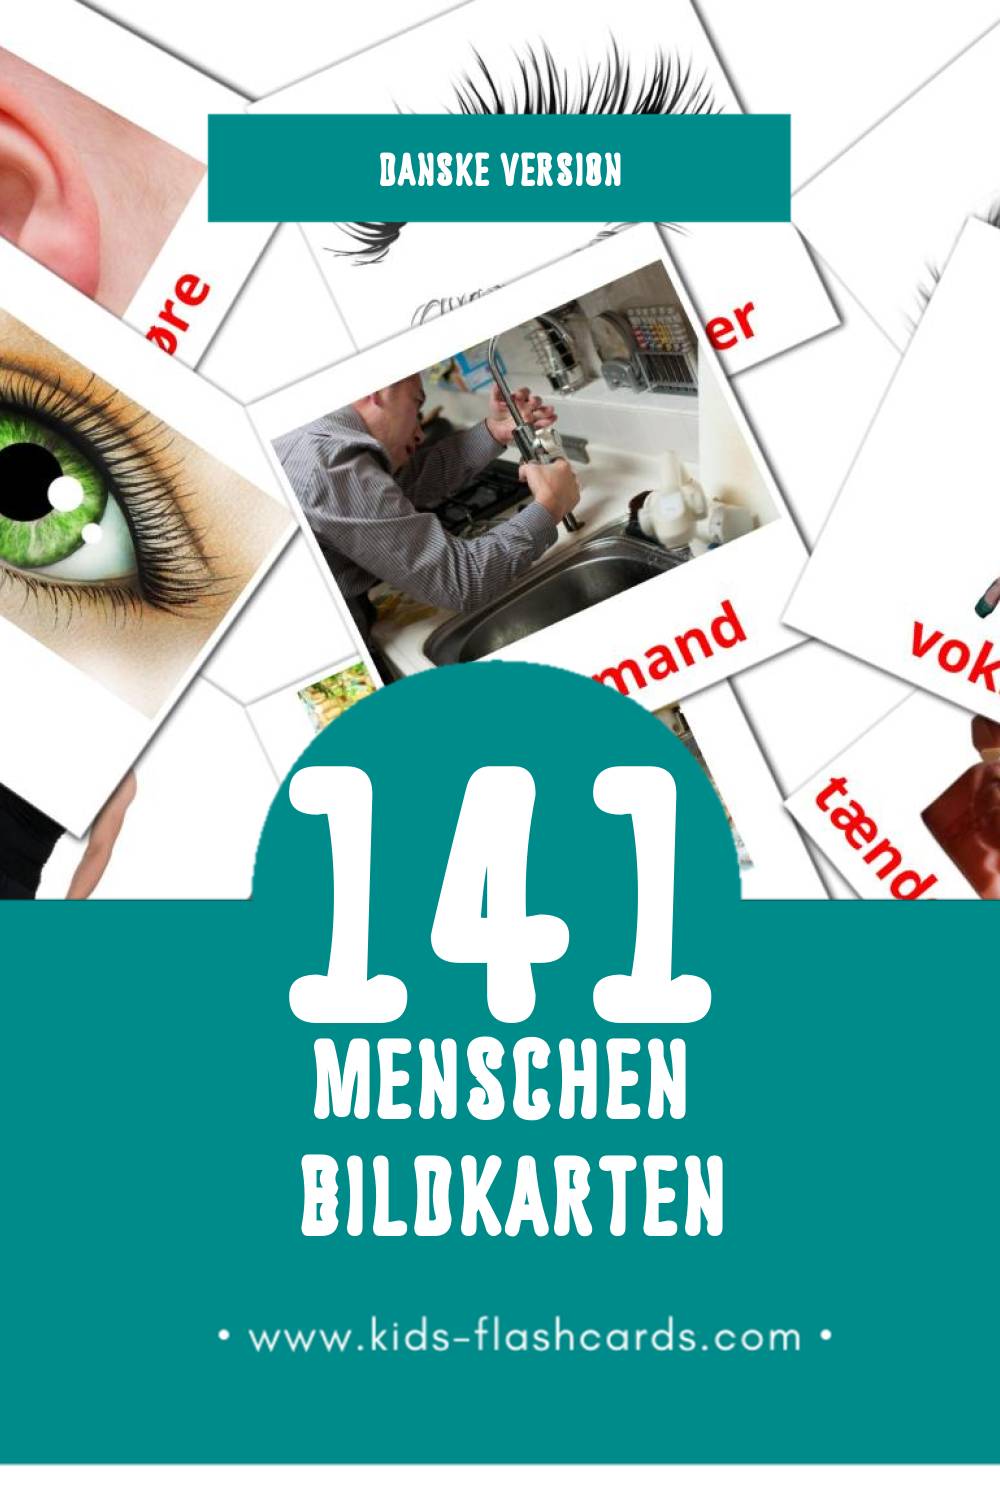 Visual Mennesker Flashcards für Kleinkinder (141 Karten in Dansk)